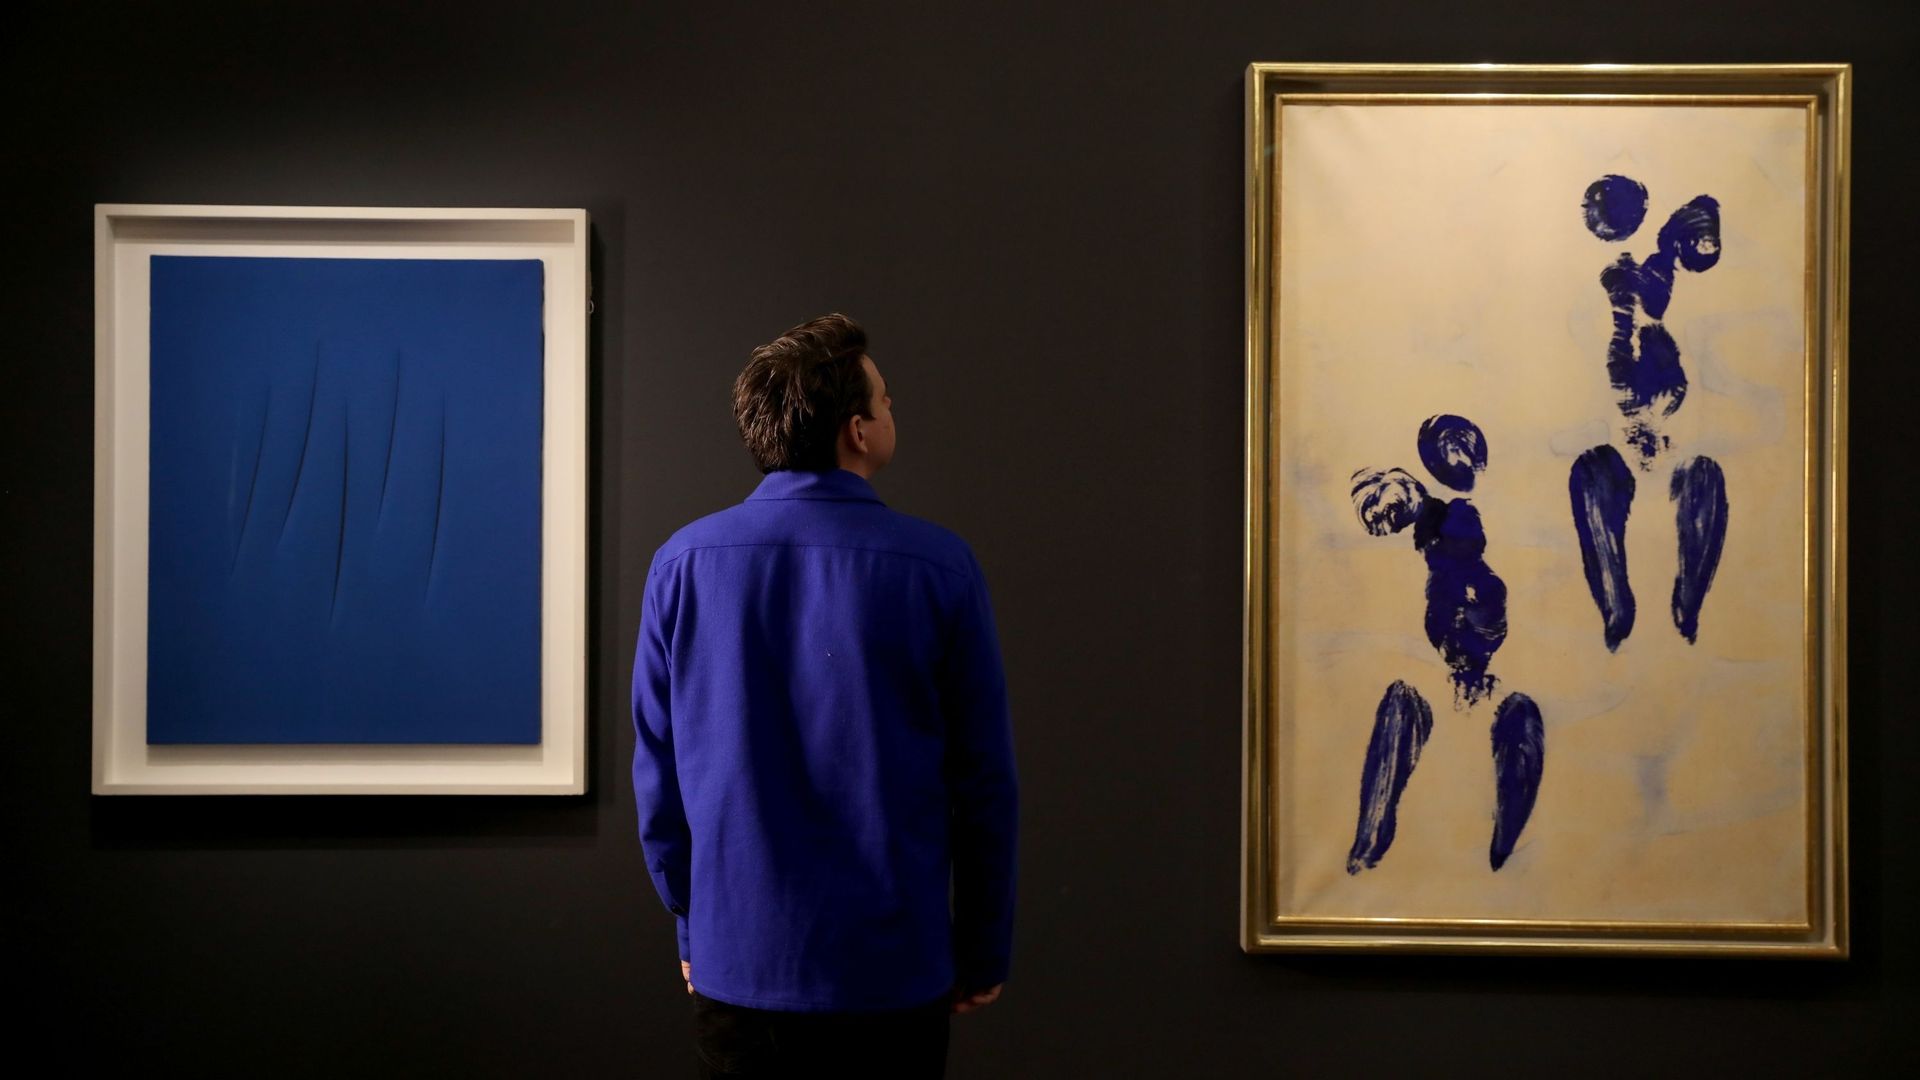 Des œuvres de Lucio Fontana et Yves Klein sont exposées chez Sotheby’s le 7 février 2020 à Londres, Angleterre.